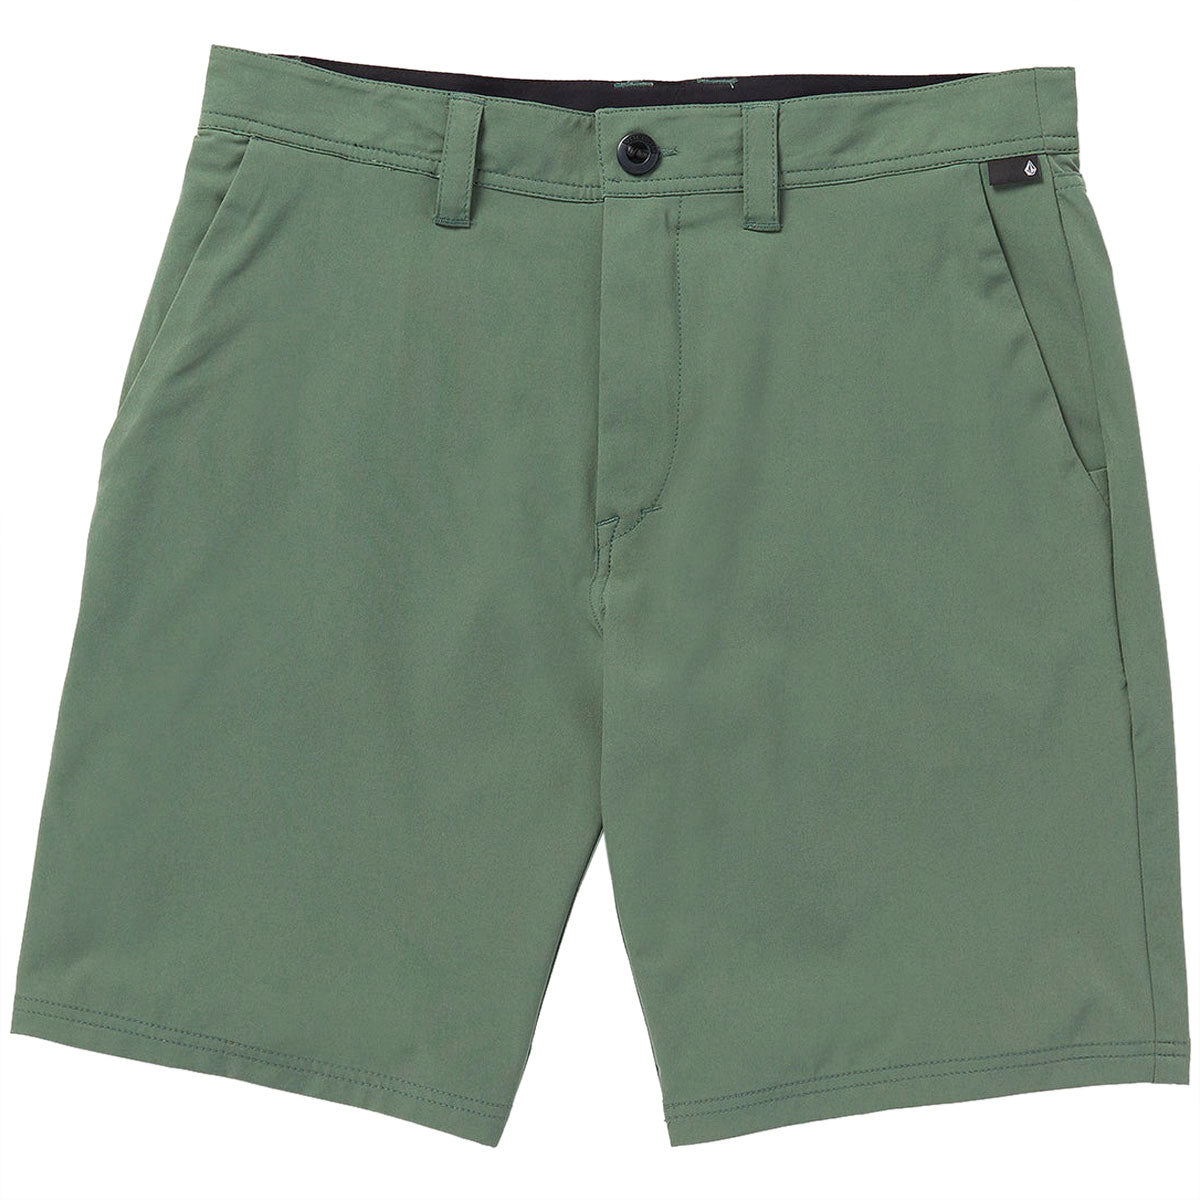 Volcom Frickin Cross Shred 20 Shorts - Fir Green image 1